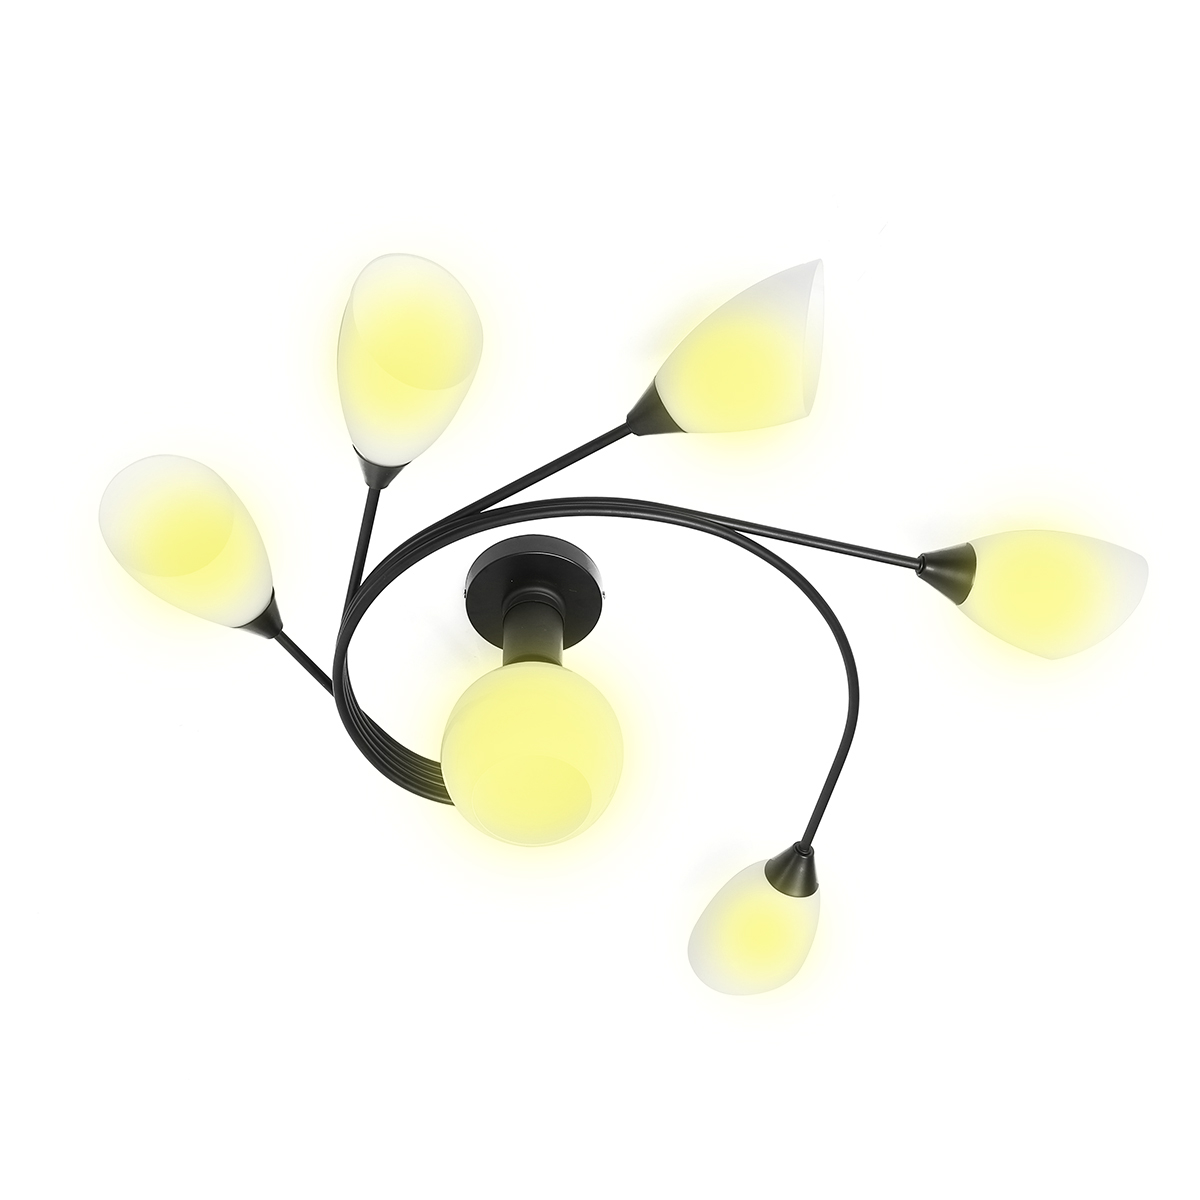 Modern-Ceiling-Light-Home-Bedroom-Pendant-Chandeliers-Lamp-Lighting-Fixture-1604532-8